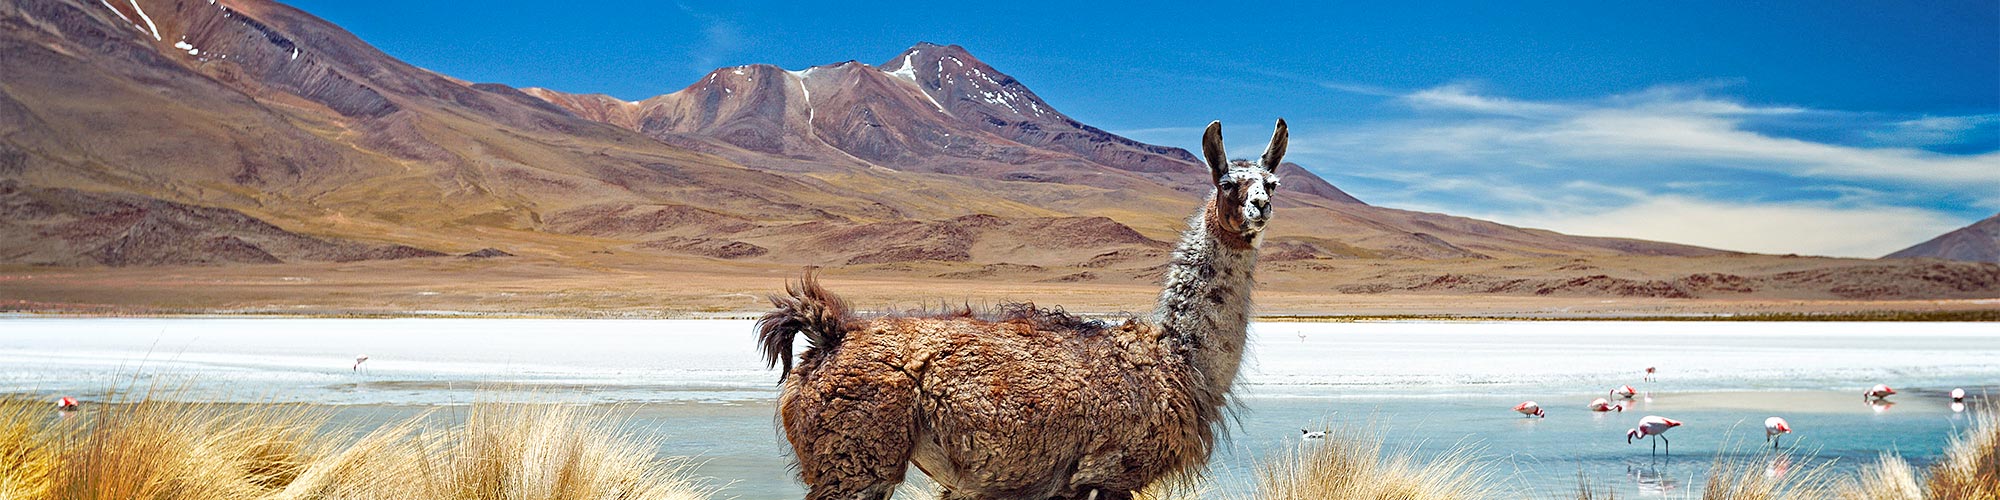 Trekking zu den Salzwüsten, Lagunen, Vulkanen und dem Titicacasee - Trekking in Bolivien.